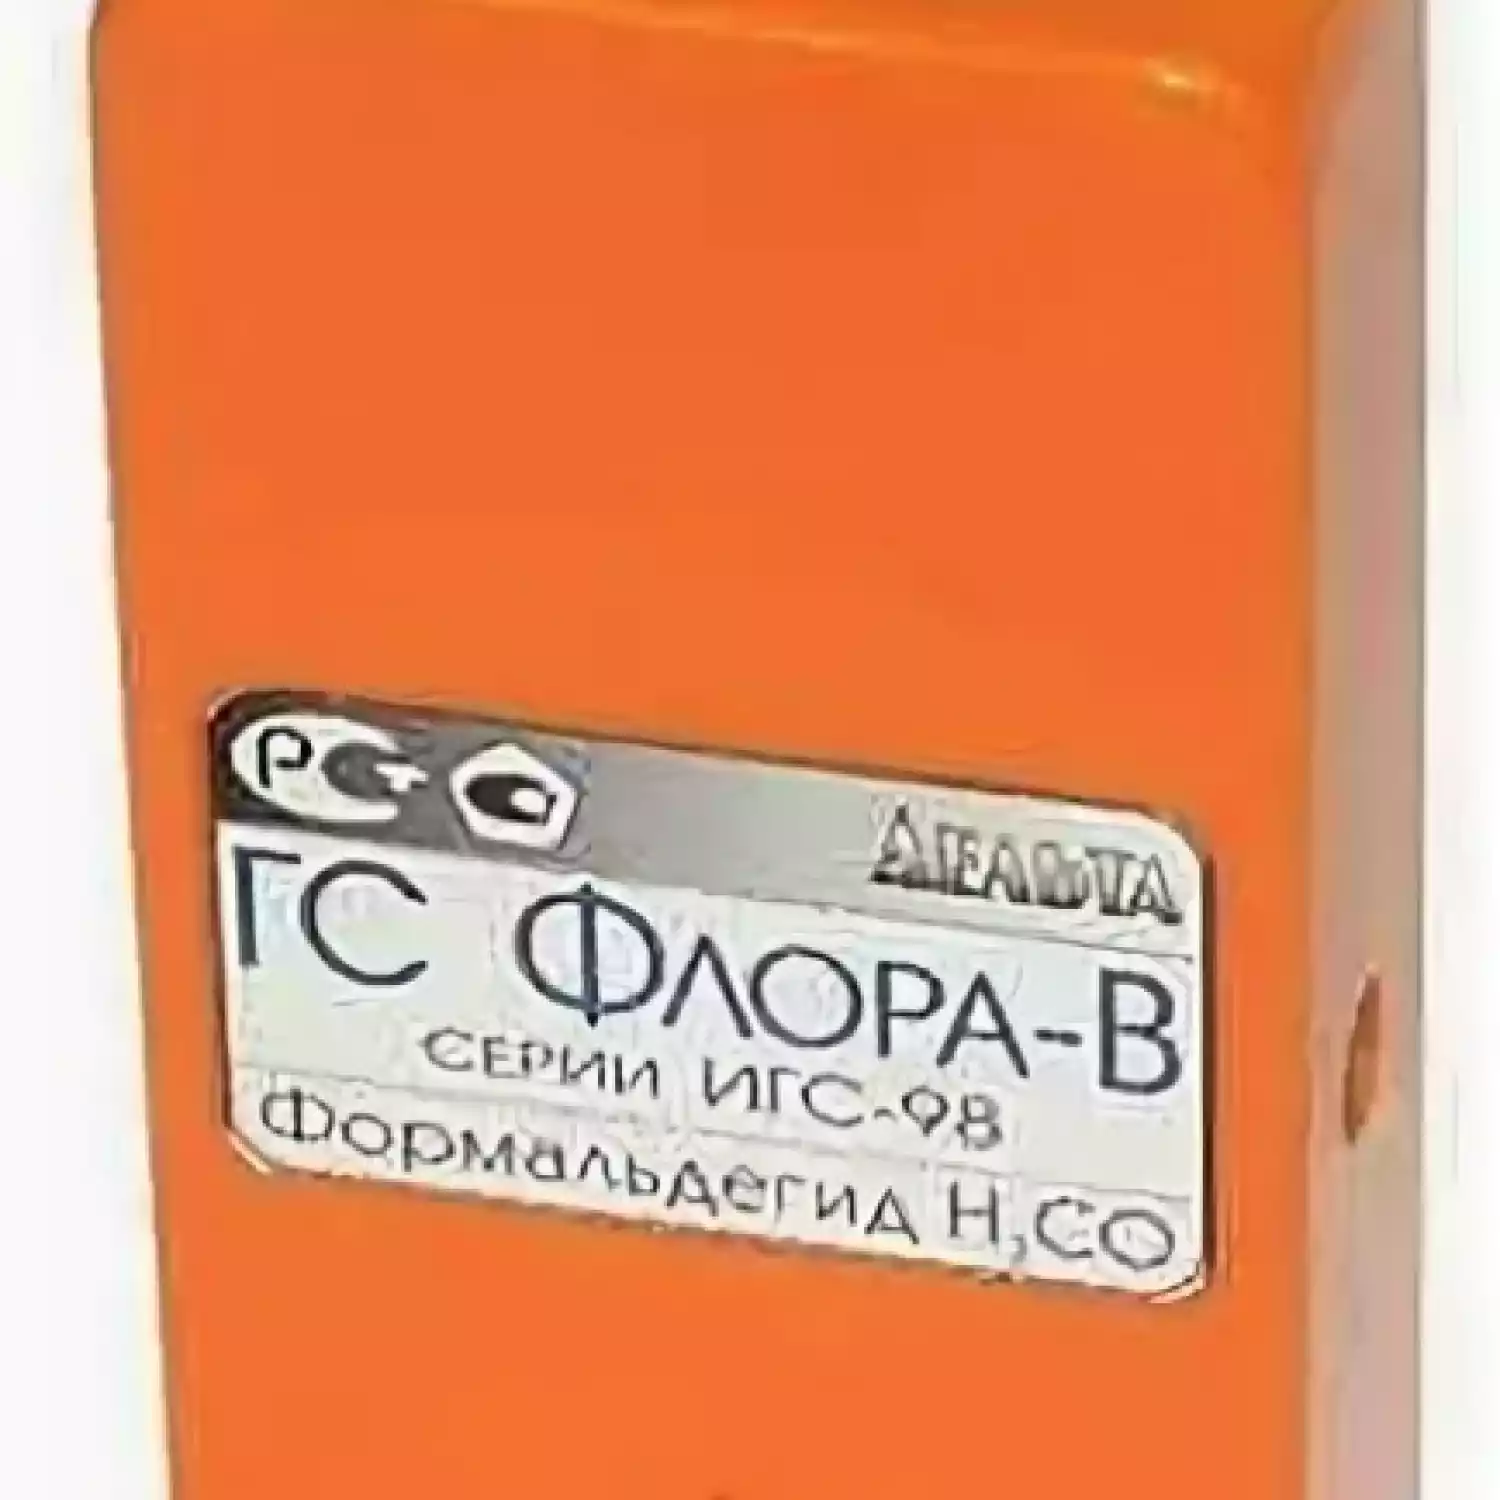 ИГС-98 Флора-В газосигнализатор - 1